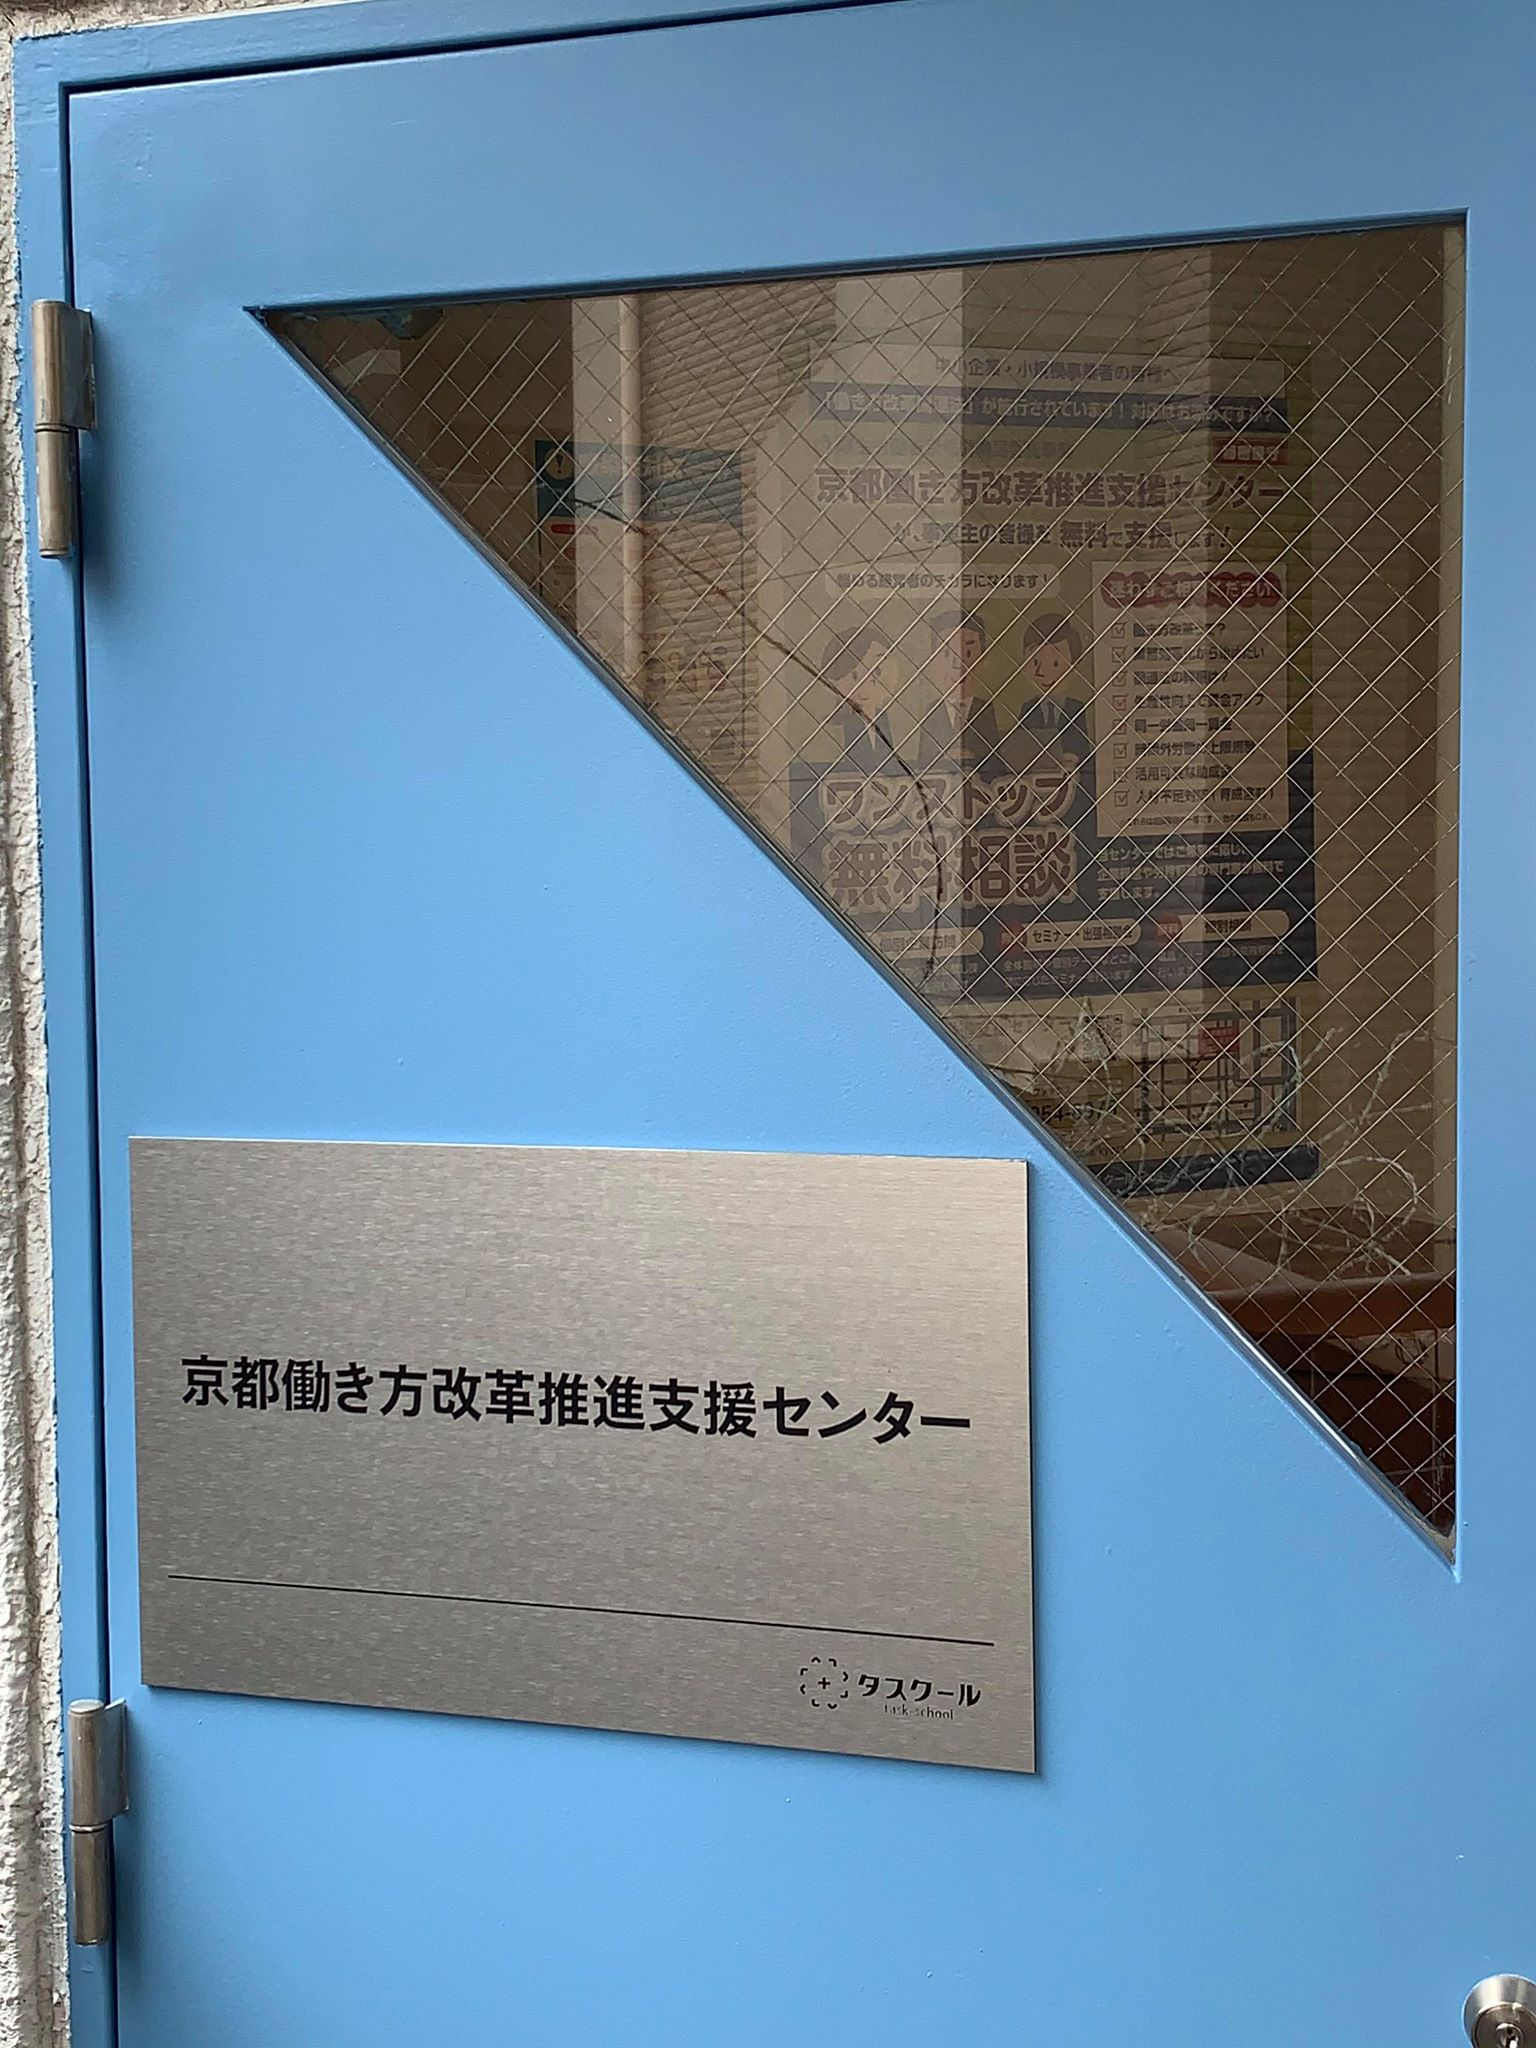 京都働き方改革推進支援センターの玄関